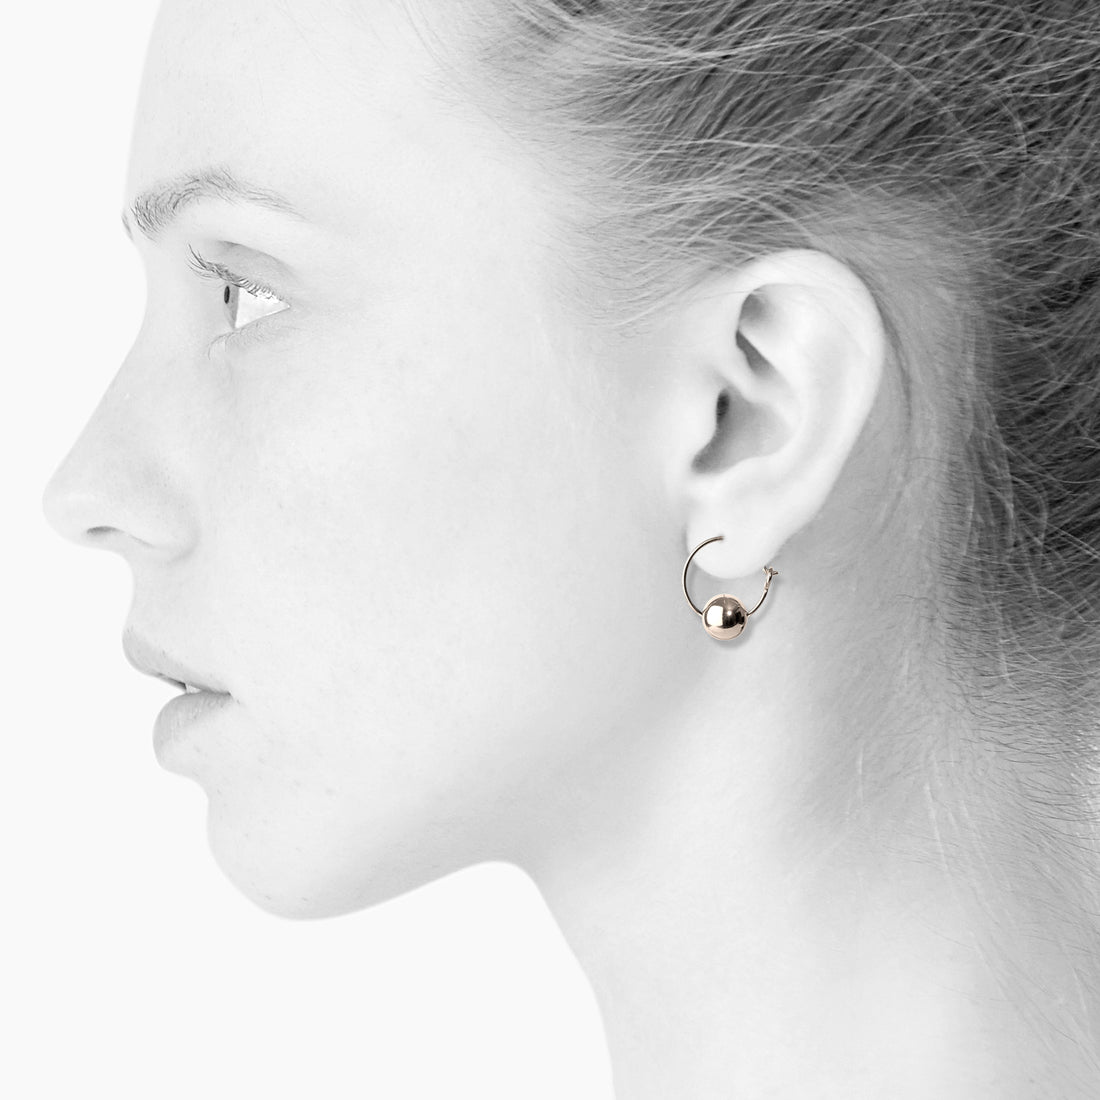 Scherning smykker - Sød og fin ørering med blank sølvperle.